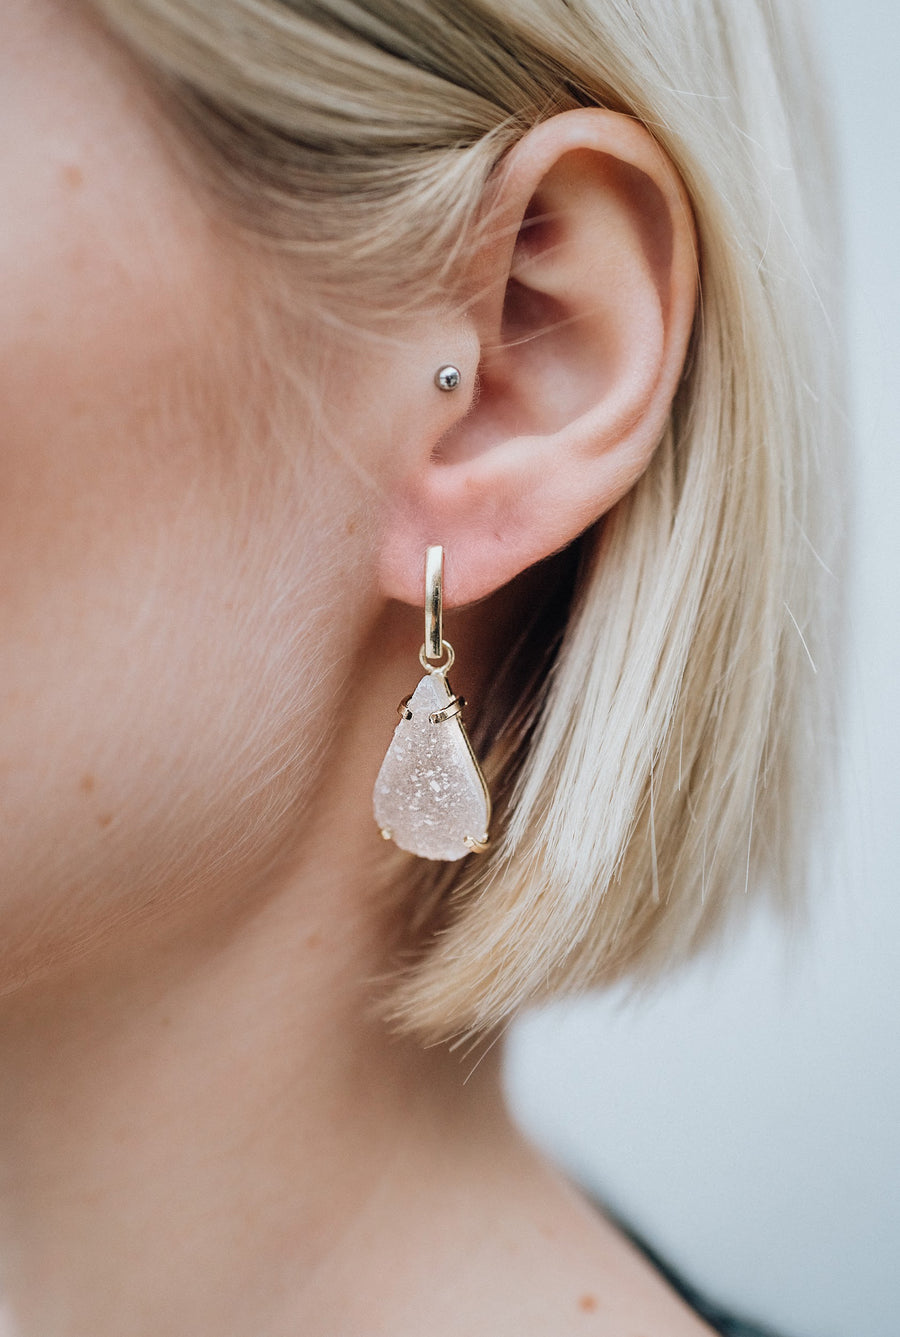 Teardrop quartz earrings